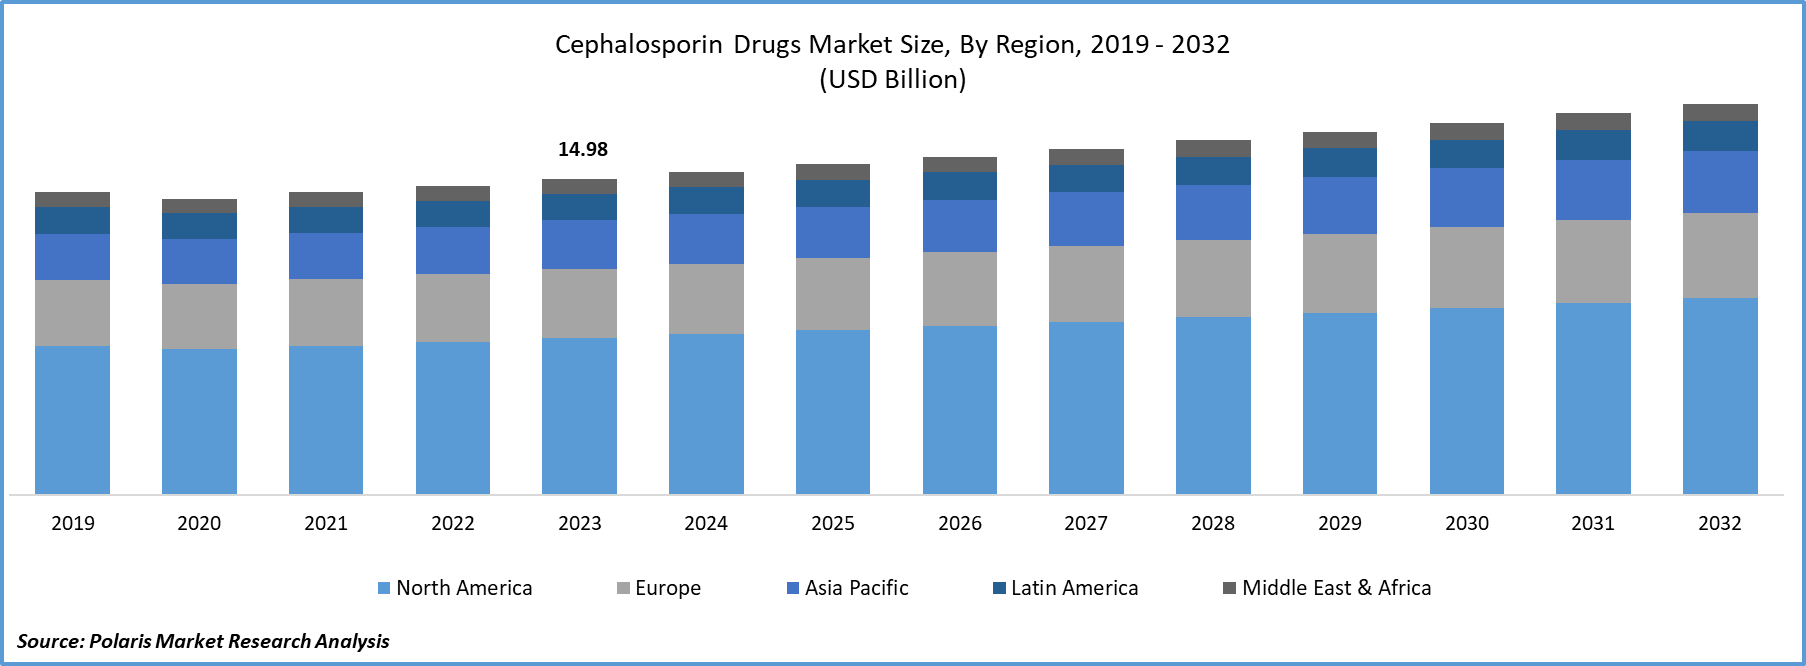 Cephalosporin Drugs Market Size